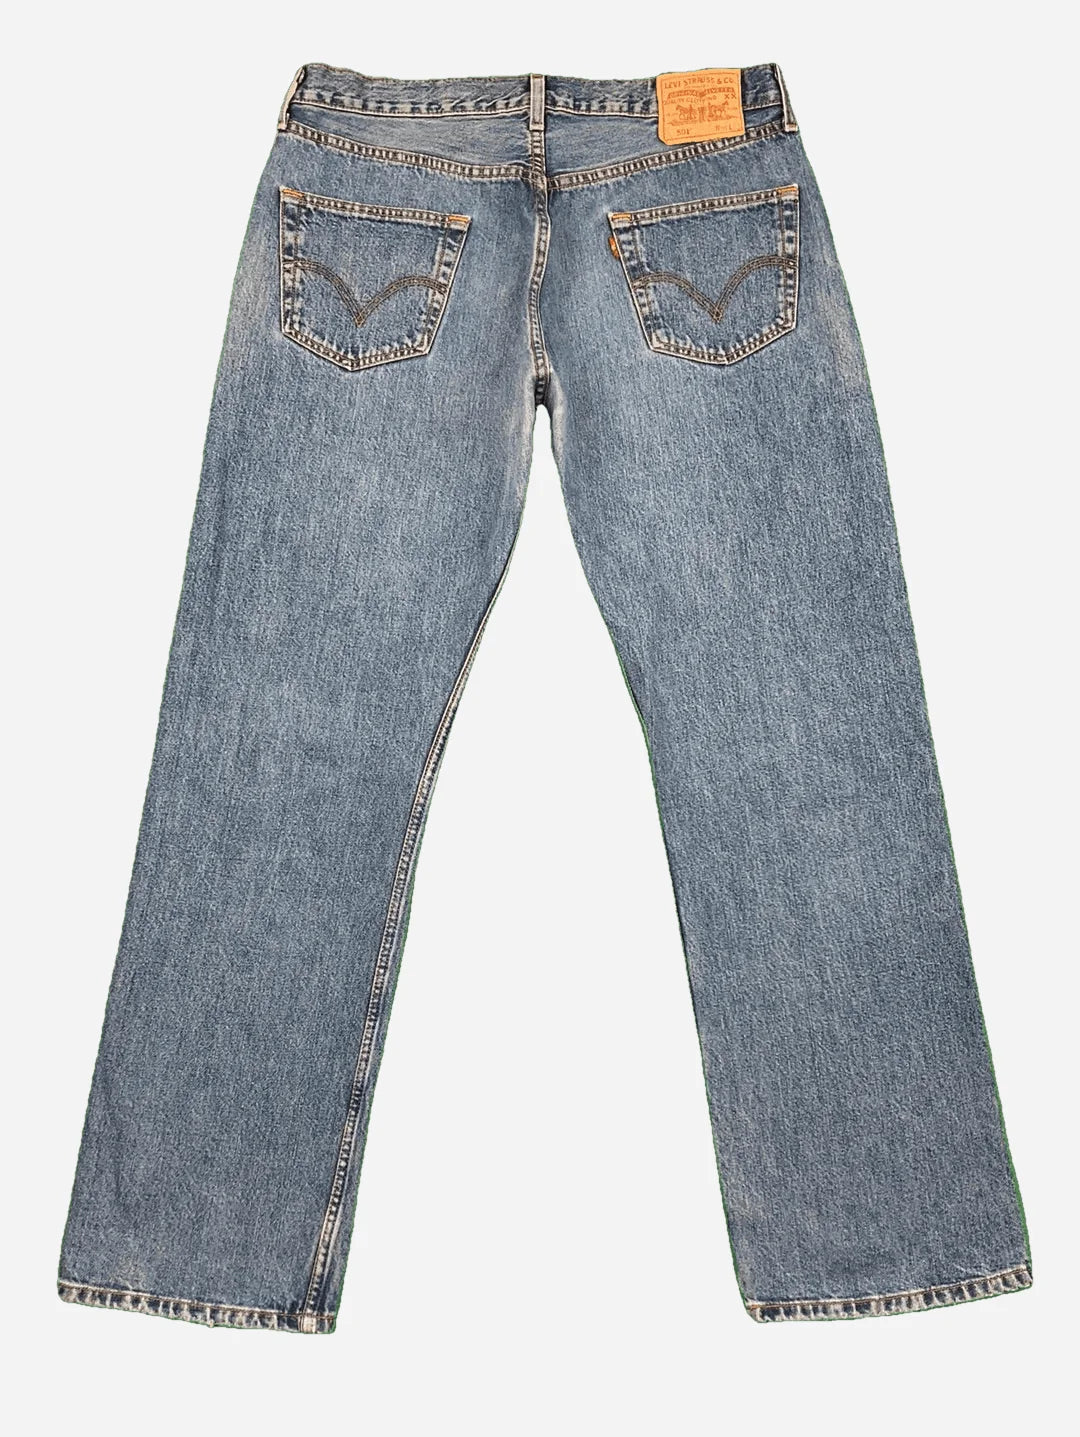 Levi’s 501 Jeans 36/32 (XL)